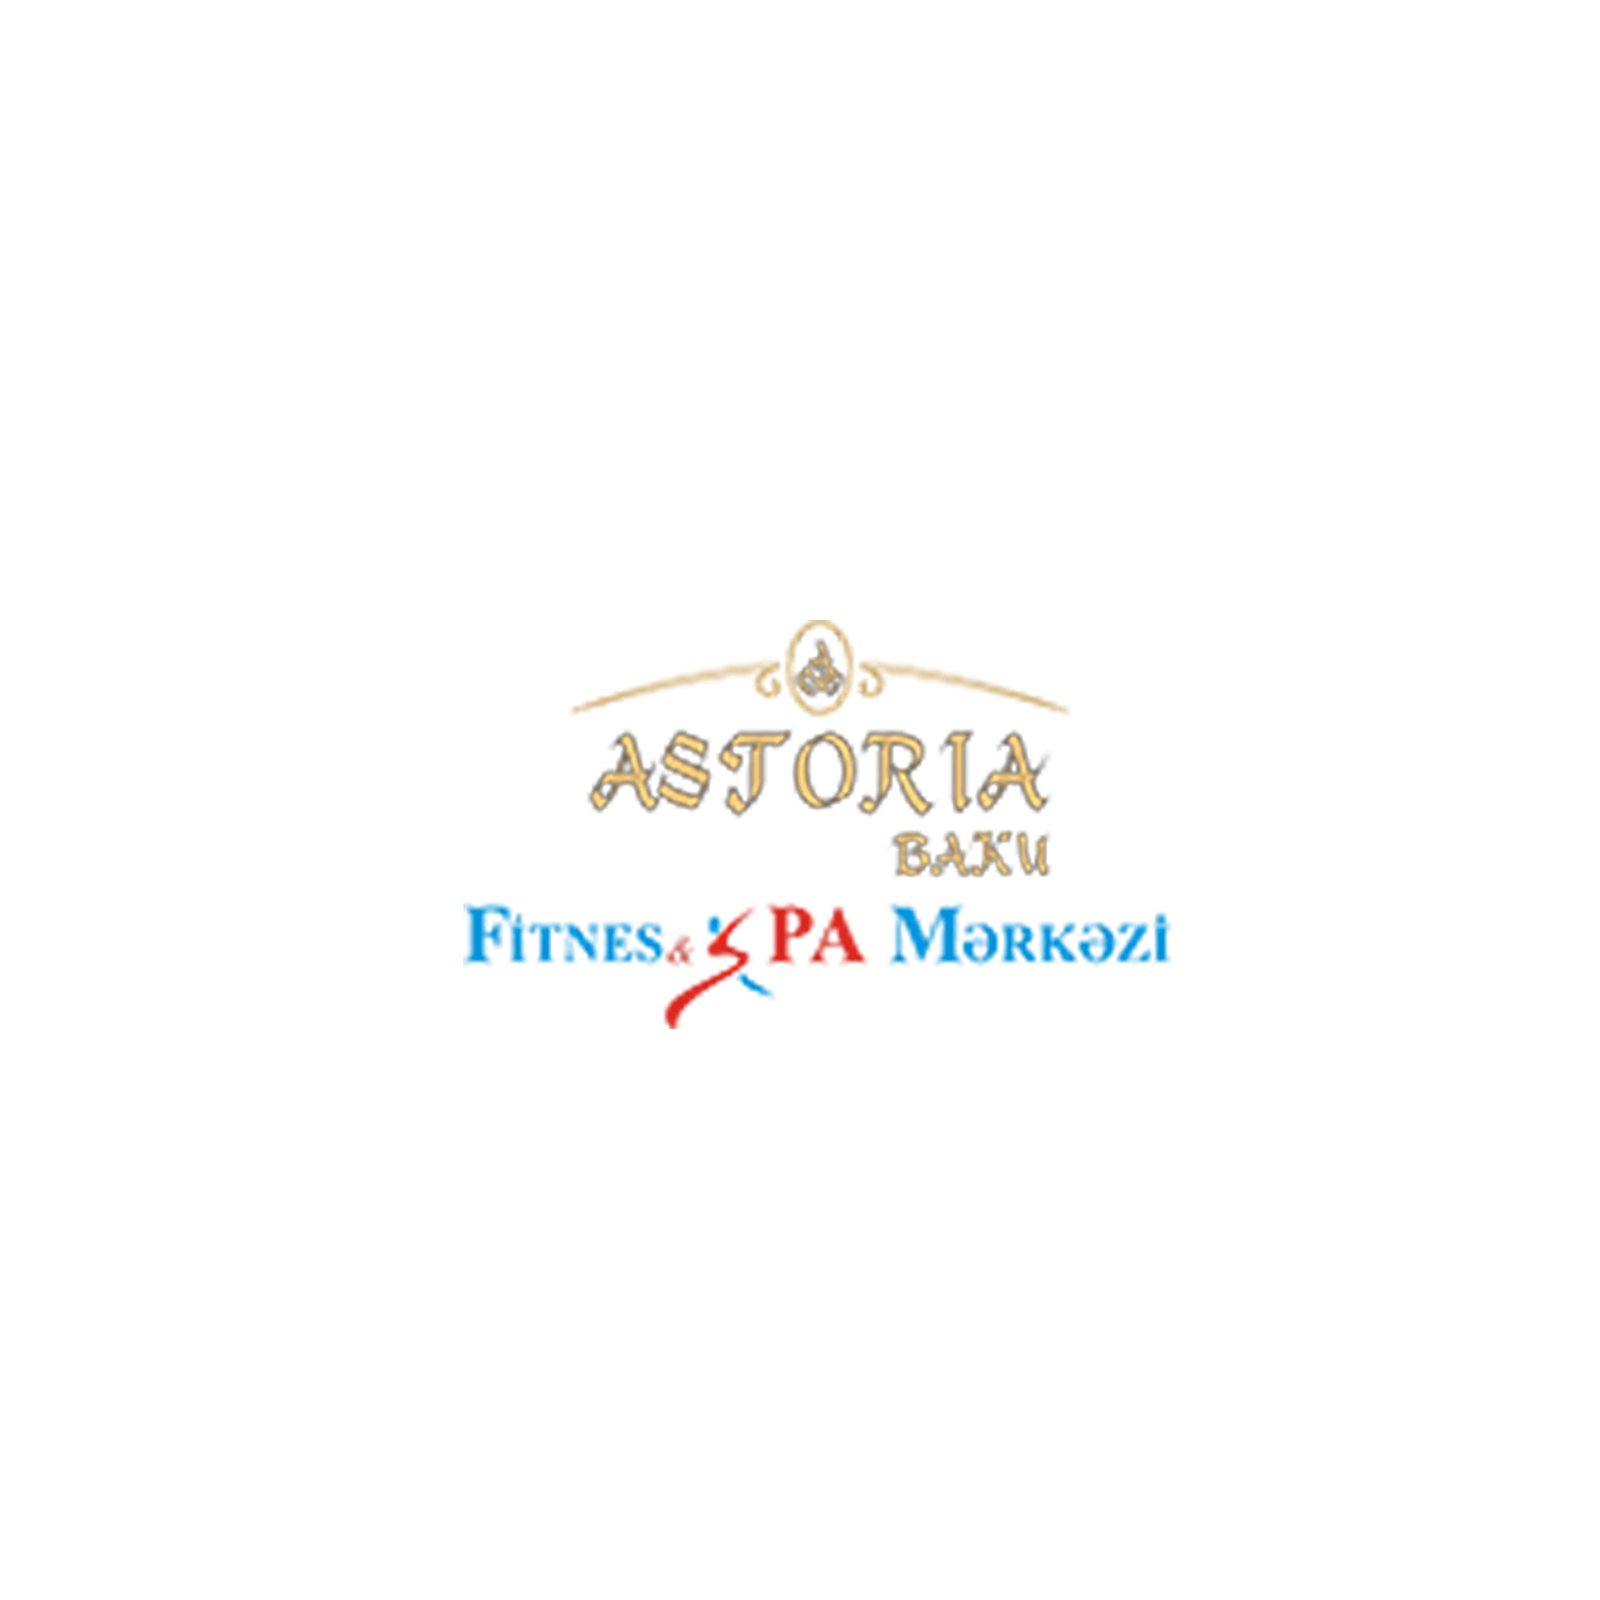 Astoria Fitnes & Spa Mərkəzi